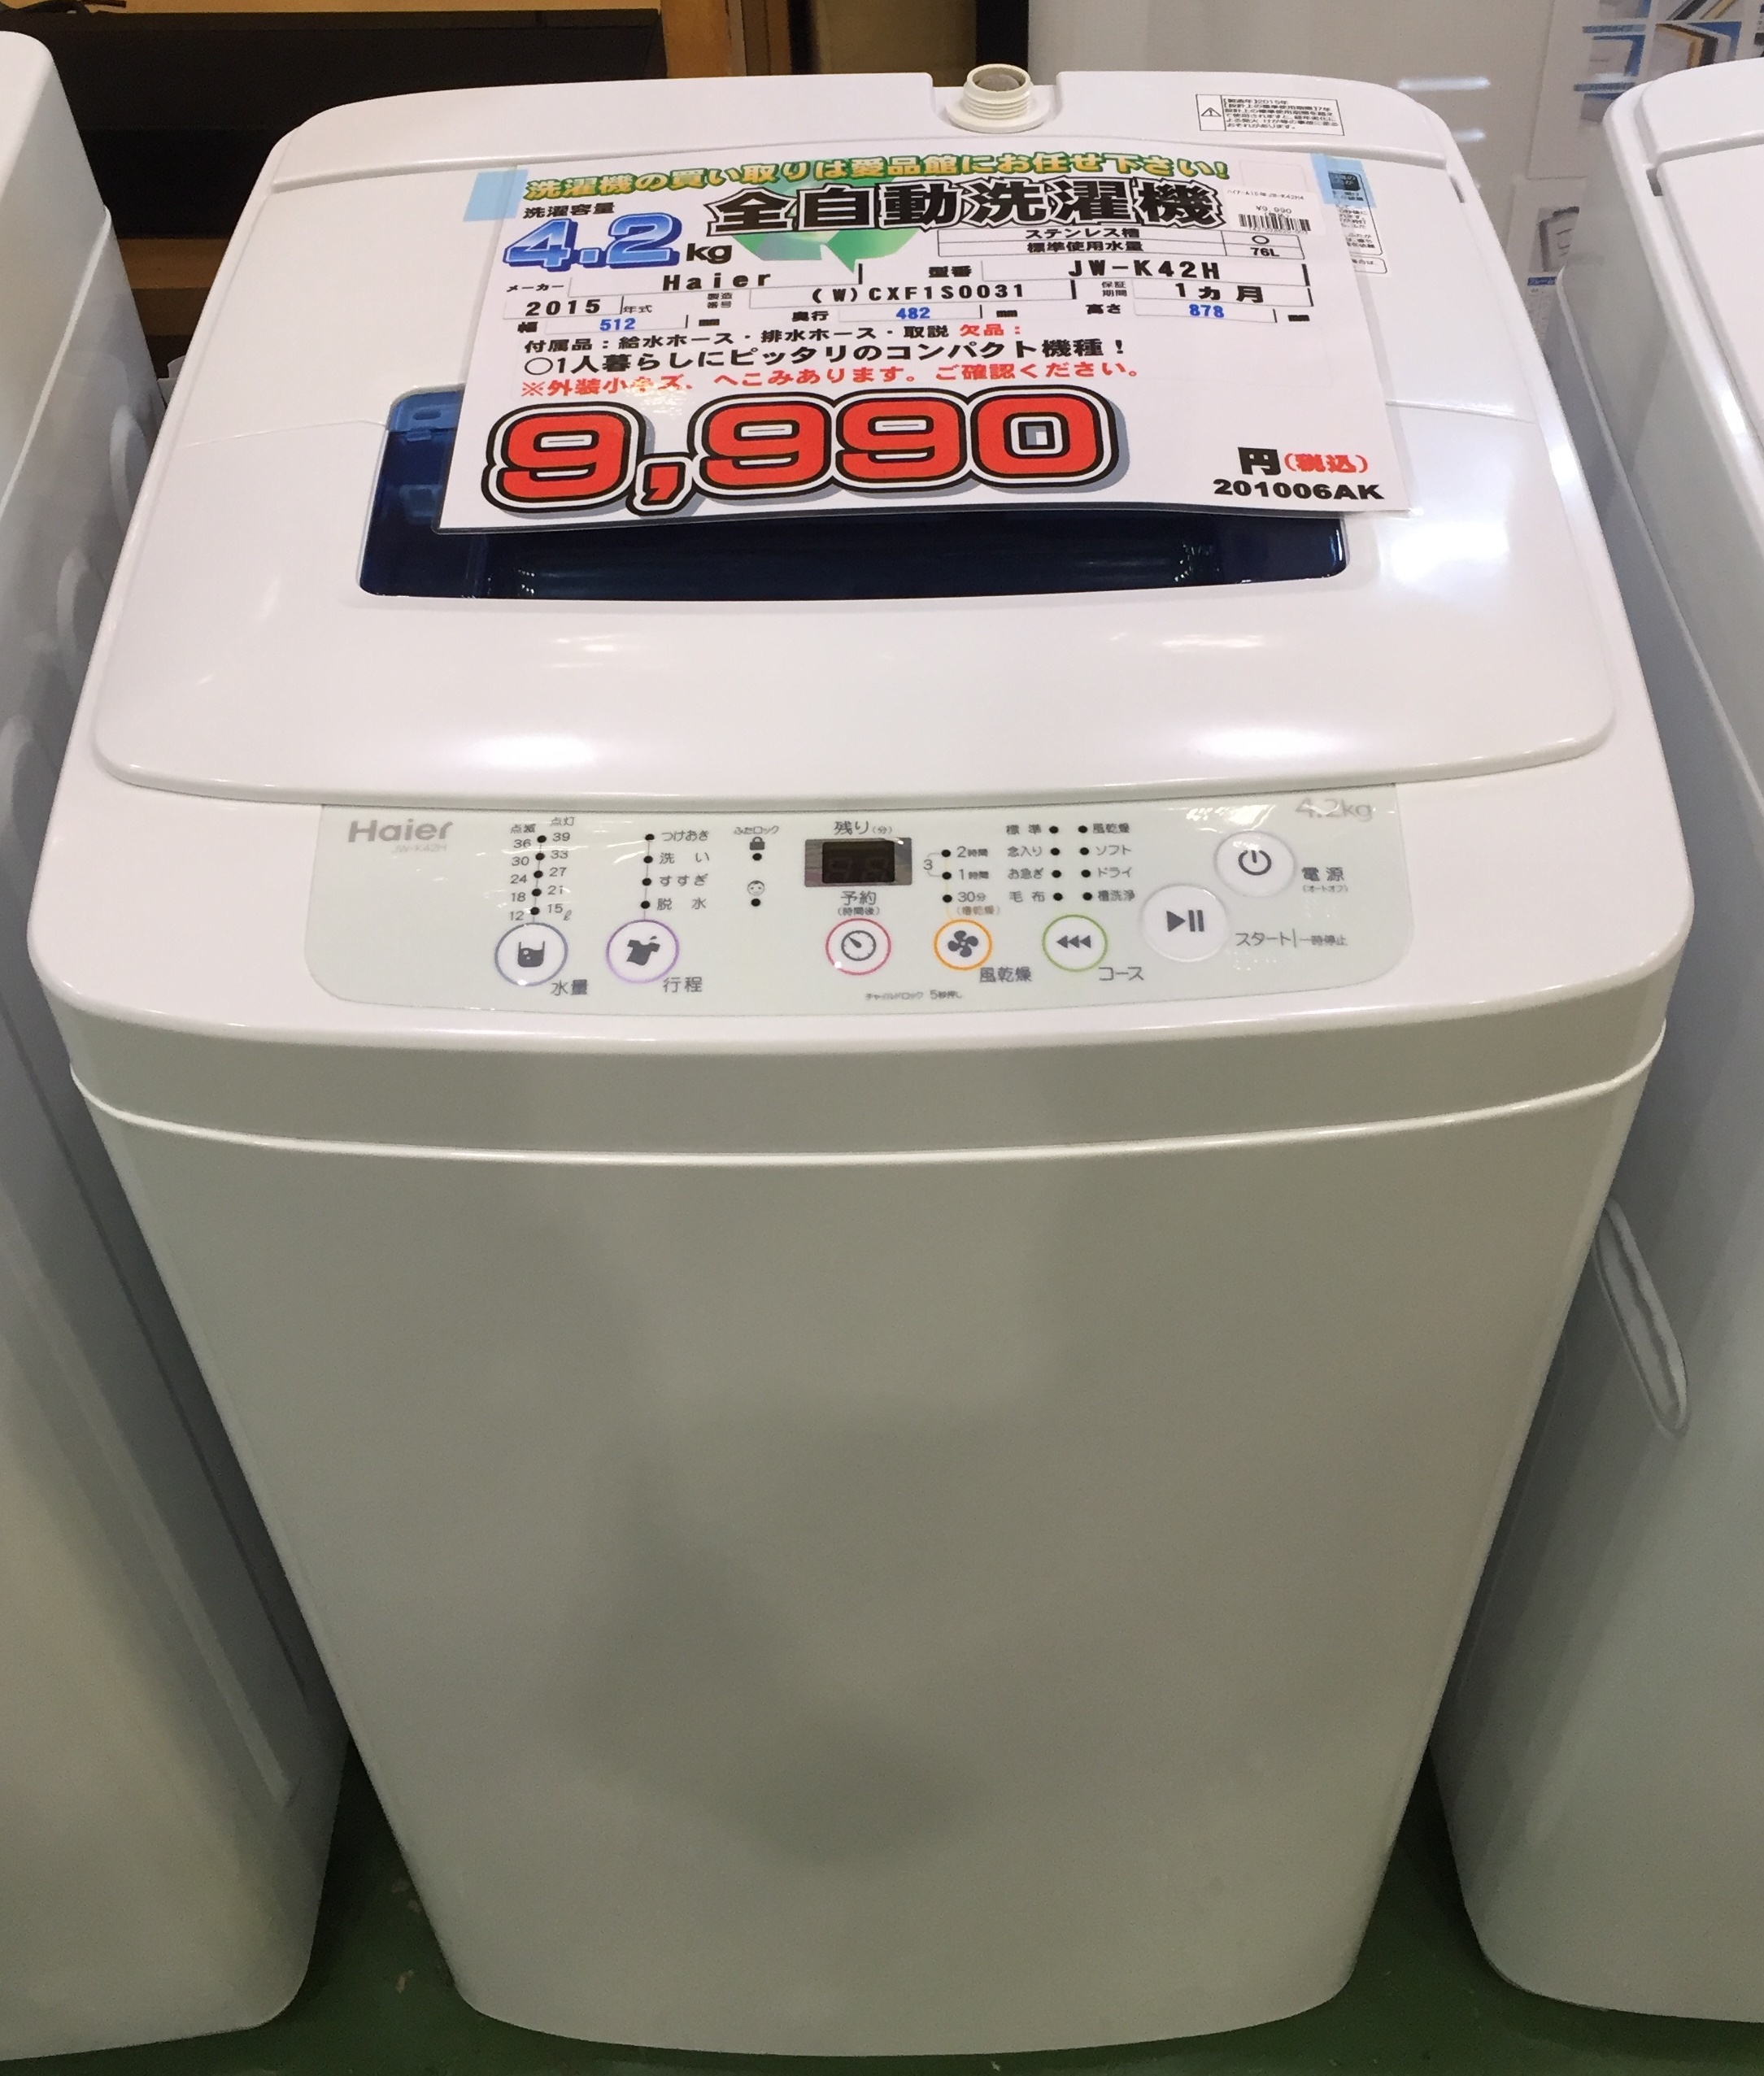 生活家電 洗濯機 ハイアール 4.2kg全自動洗濯機 JW-K42H買取致しました|愛品館八千代店 